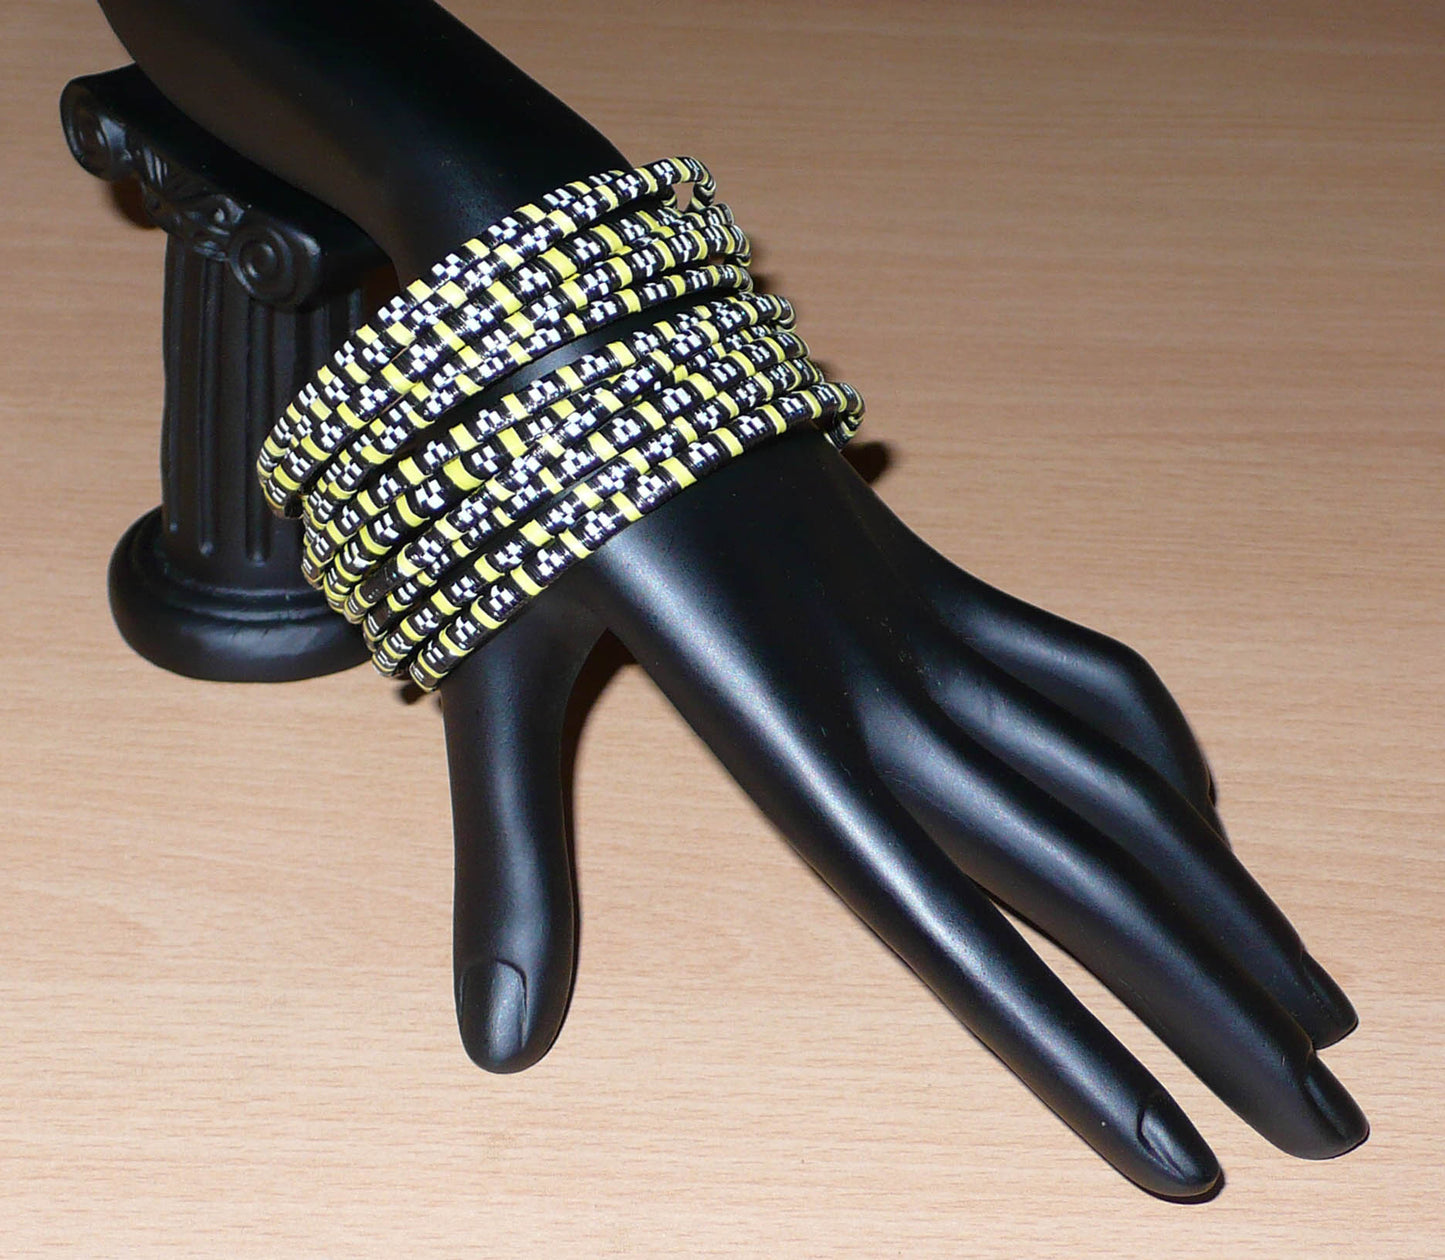 Empilez-les sur vos poignets ! Ensemble de 12 bracelets africains tricolores fabriqués au Mali à partir de fines bandes de plastique recyclé noir, jaune et blanc.  Ces bracelets, très fins, ont une circonférence de 20,5 cm, un diamètre de 6,5 cm et une épaisseur de 0,5 cm.  Ils peuvent être portés par une femme ou par un homme.